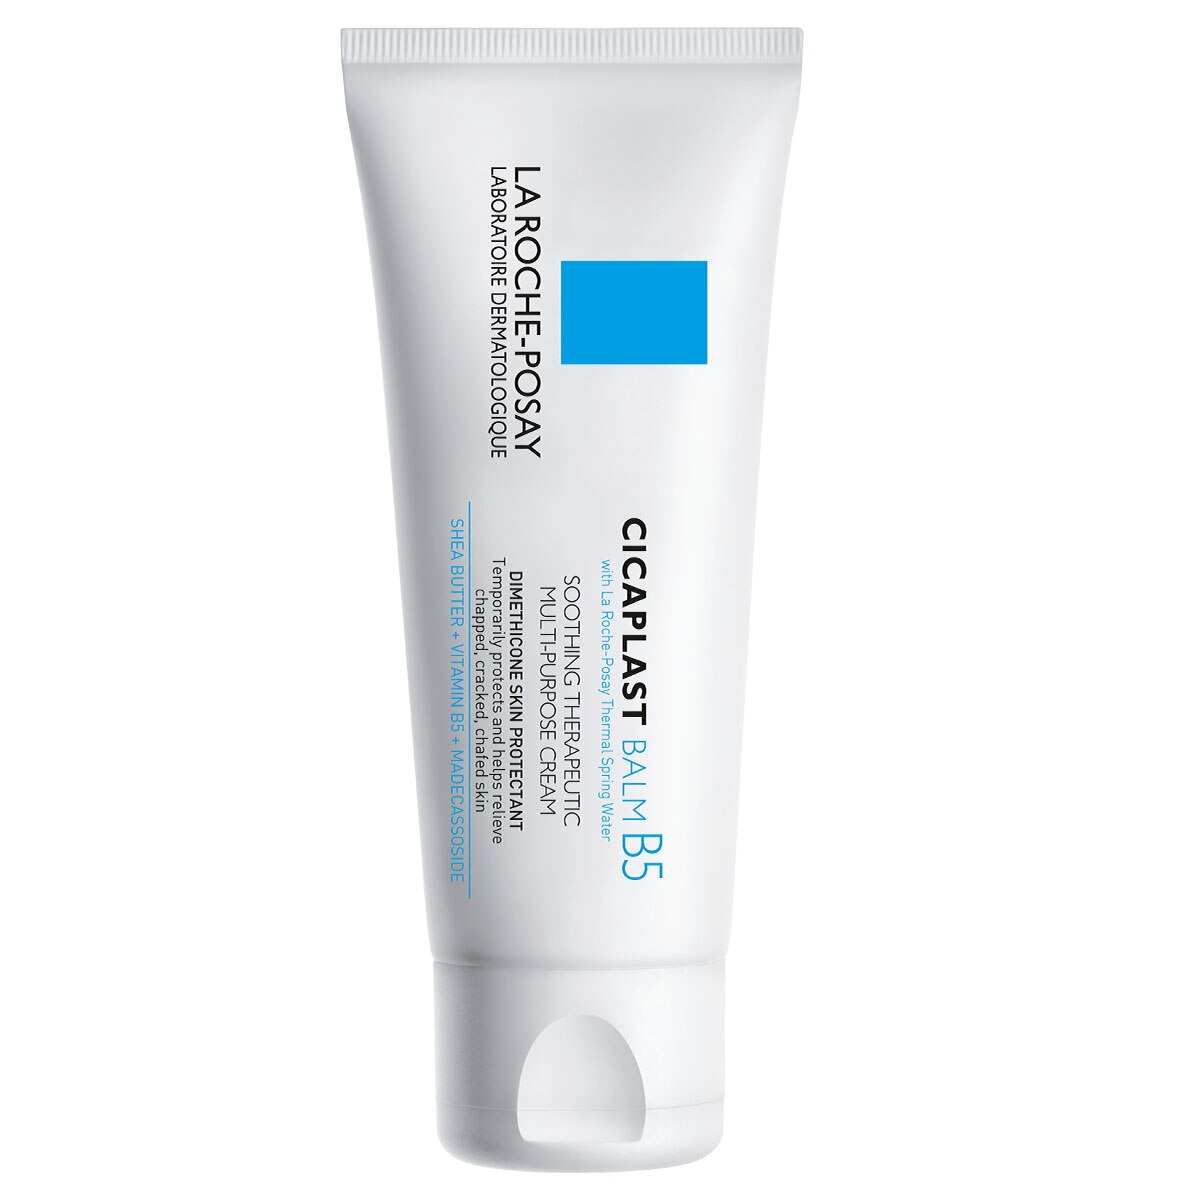 La Roche-Posay Cicaplast Balm Vitamin B5 Soothing Therapeutic Multi Purpose Cream for Dry Skin, 1.35 OZ